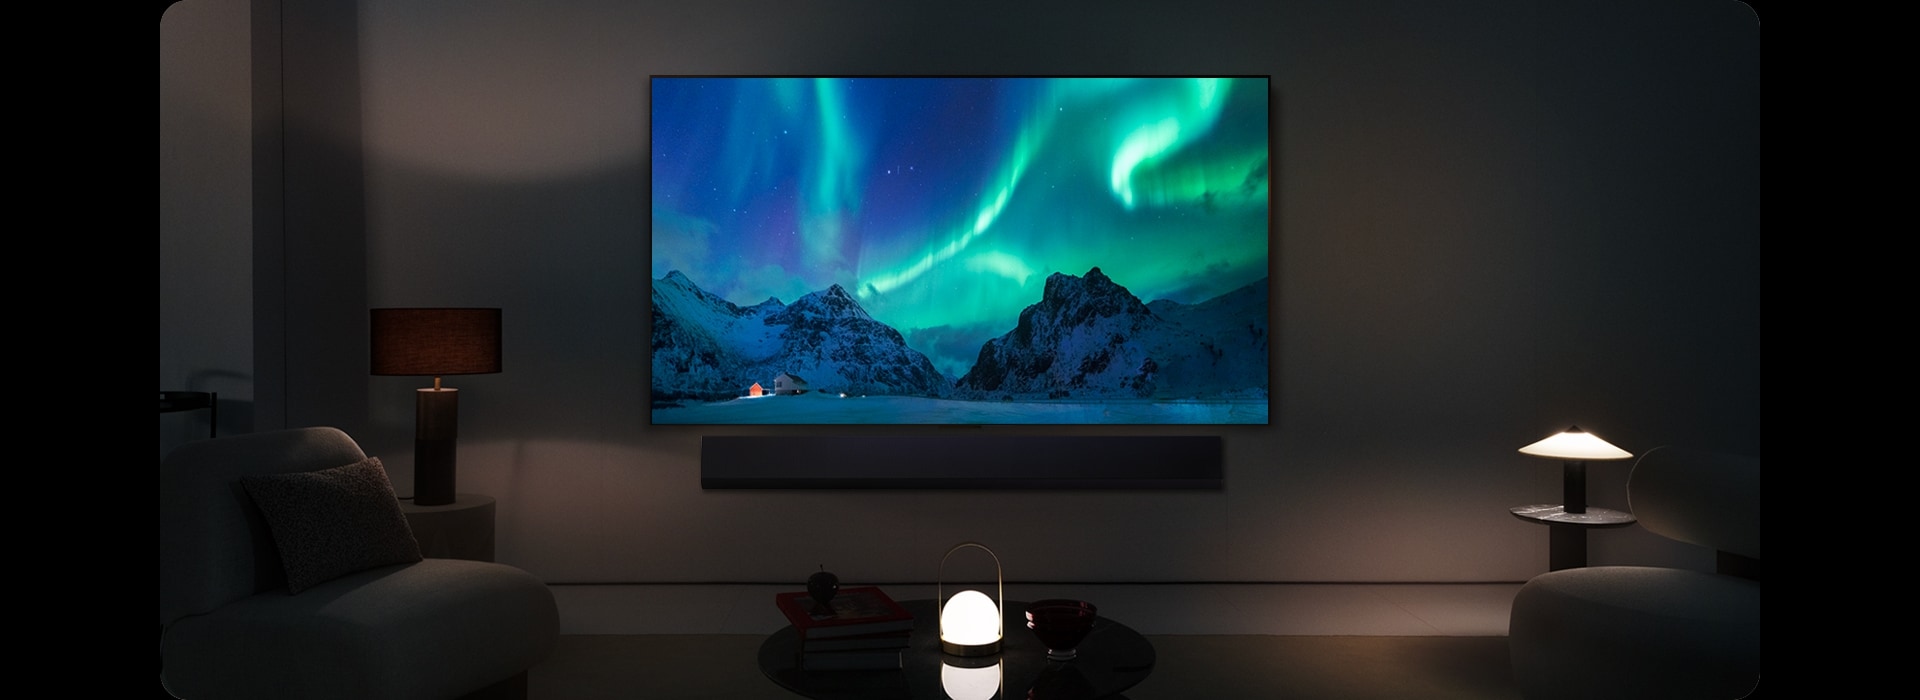 Un TV LG OLED et une barre de son LG dans un espace de vie moderne de nuit. L’image à l’écran d’une aurore boréale est affichée, avec des niveaux de luminosité idéals. 